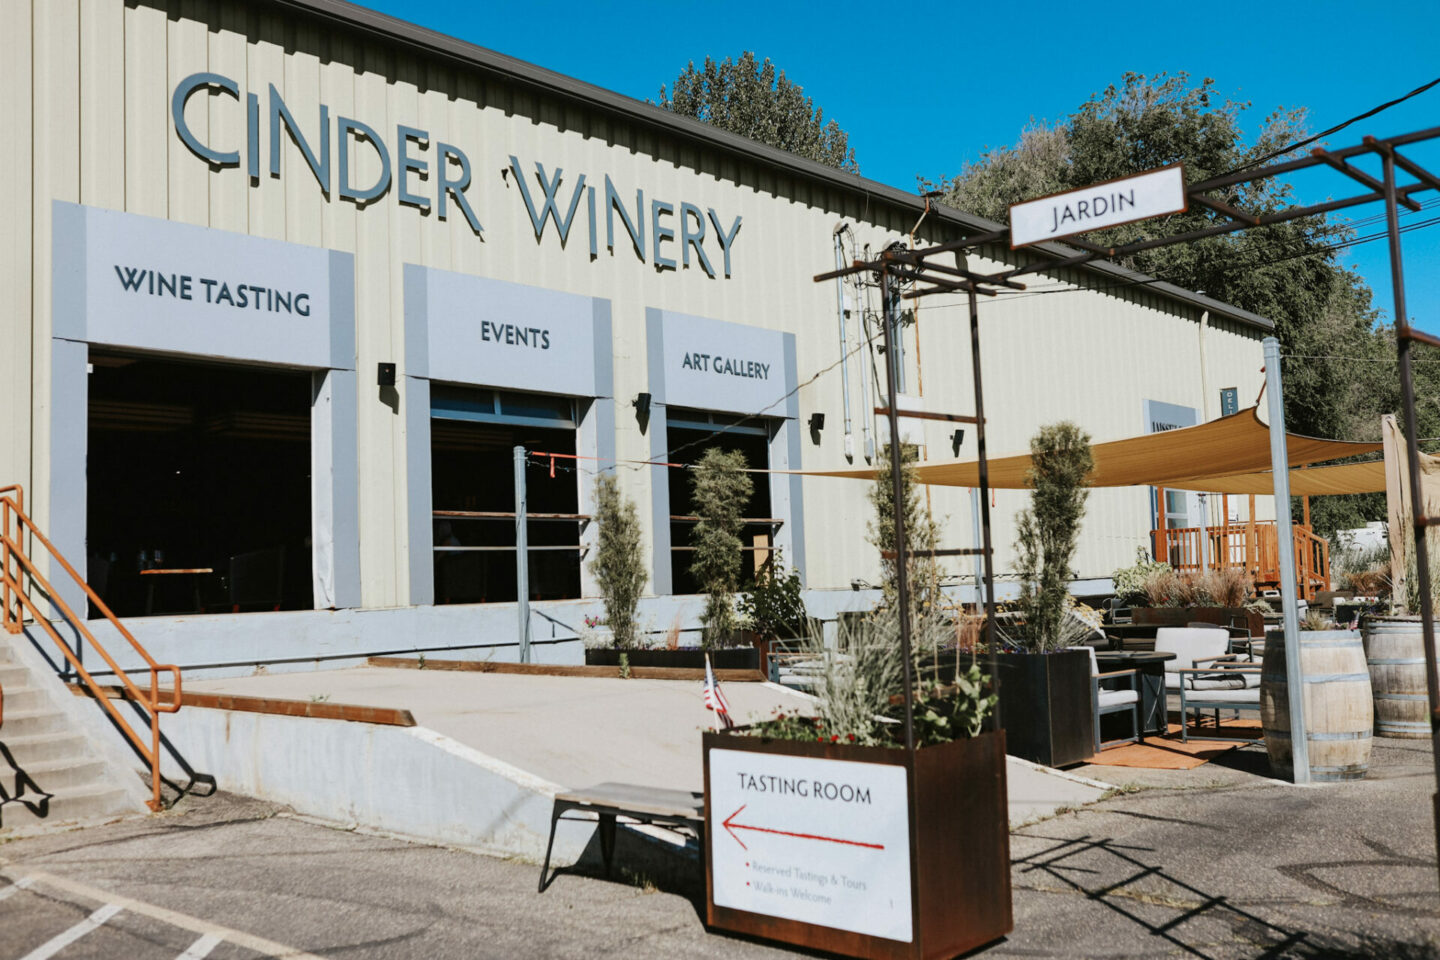 Cinder Winery tasting room in Boise, Idaho urban winery